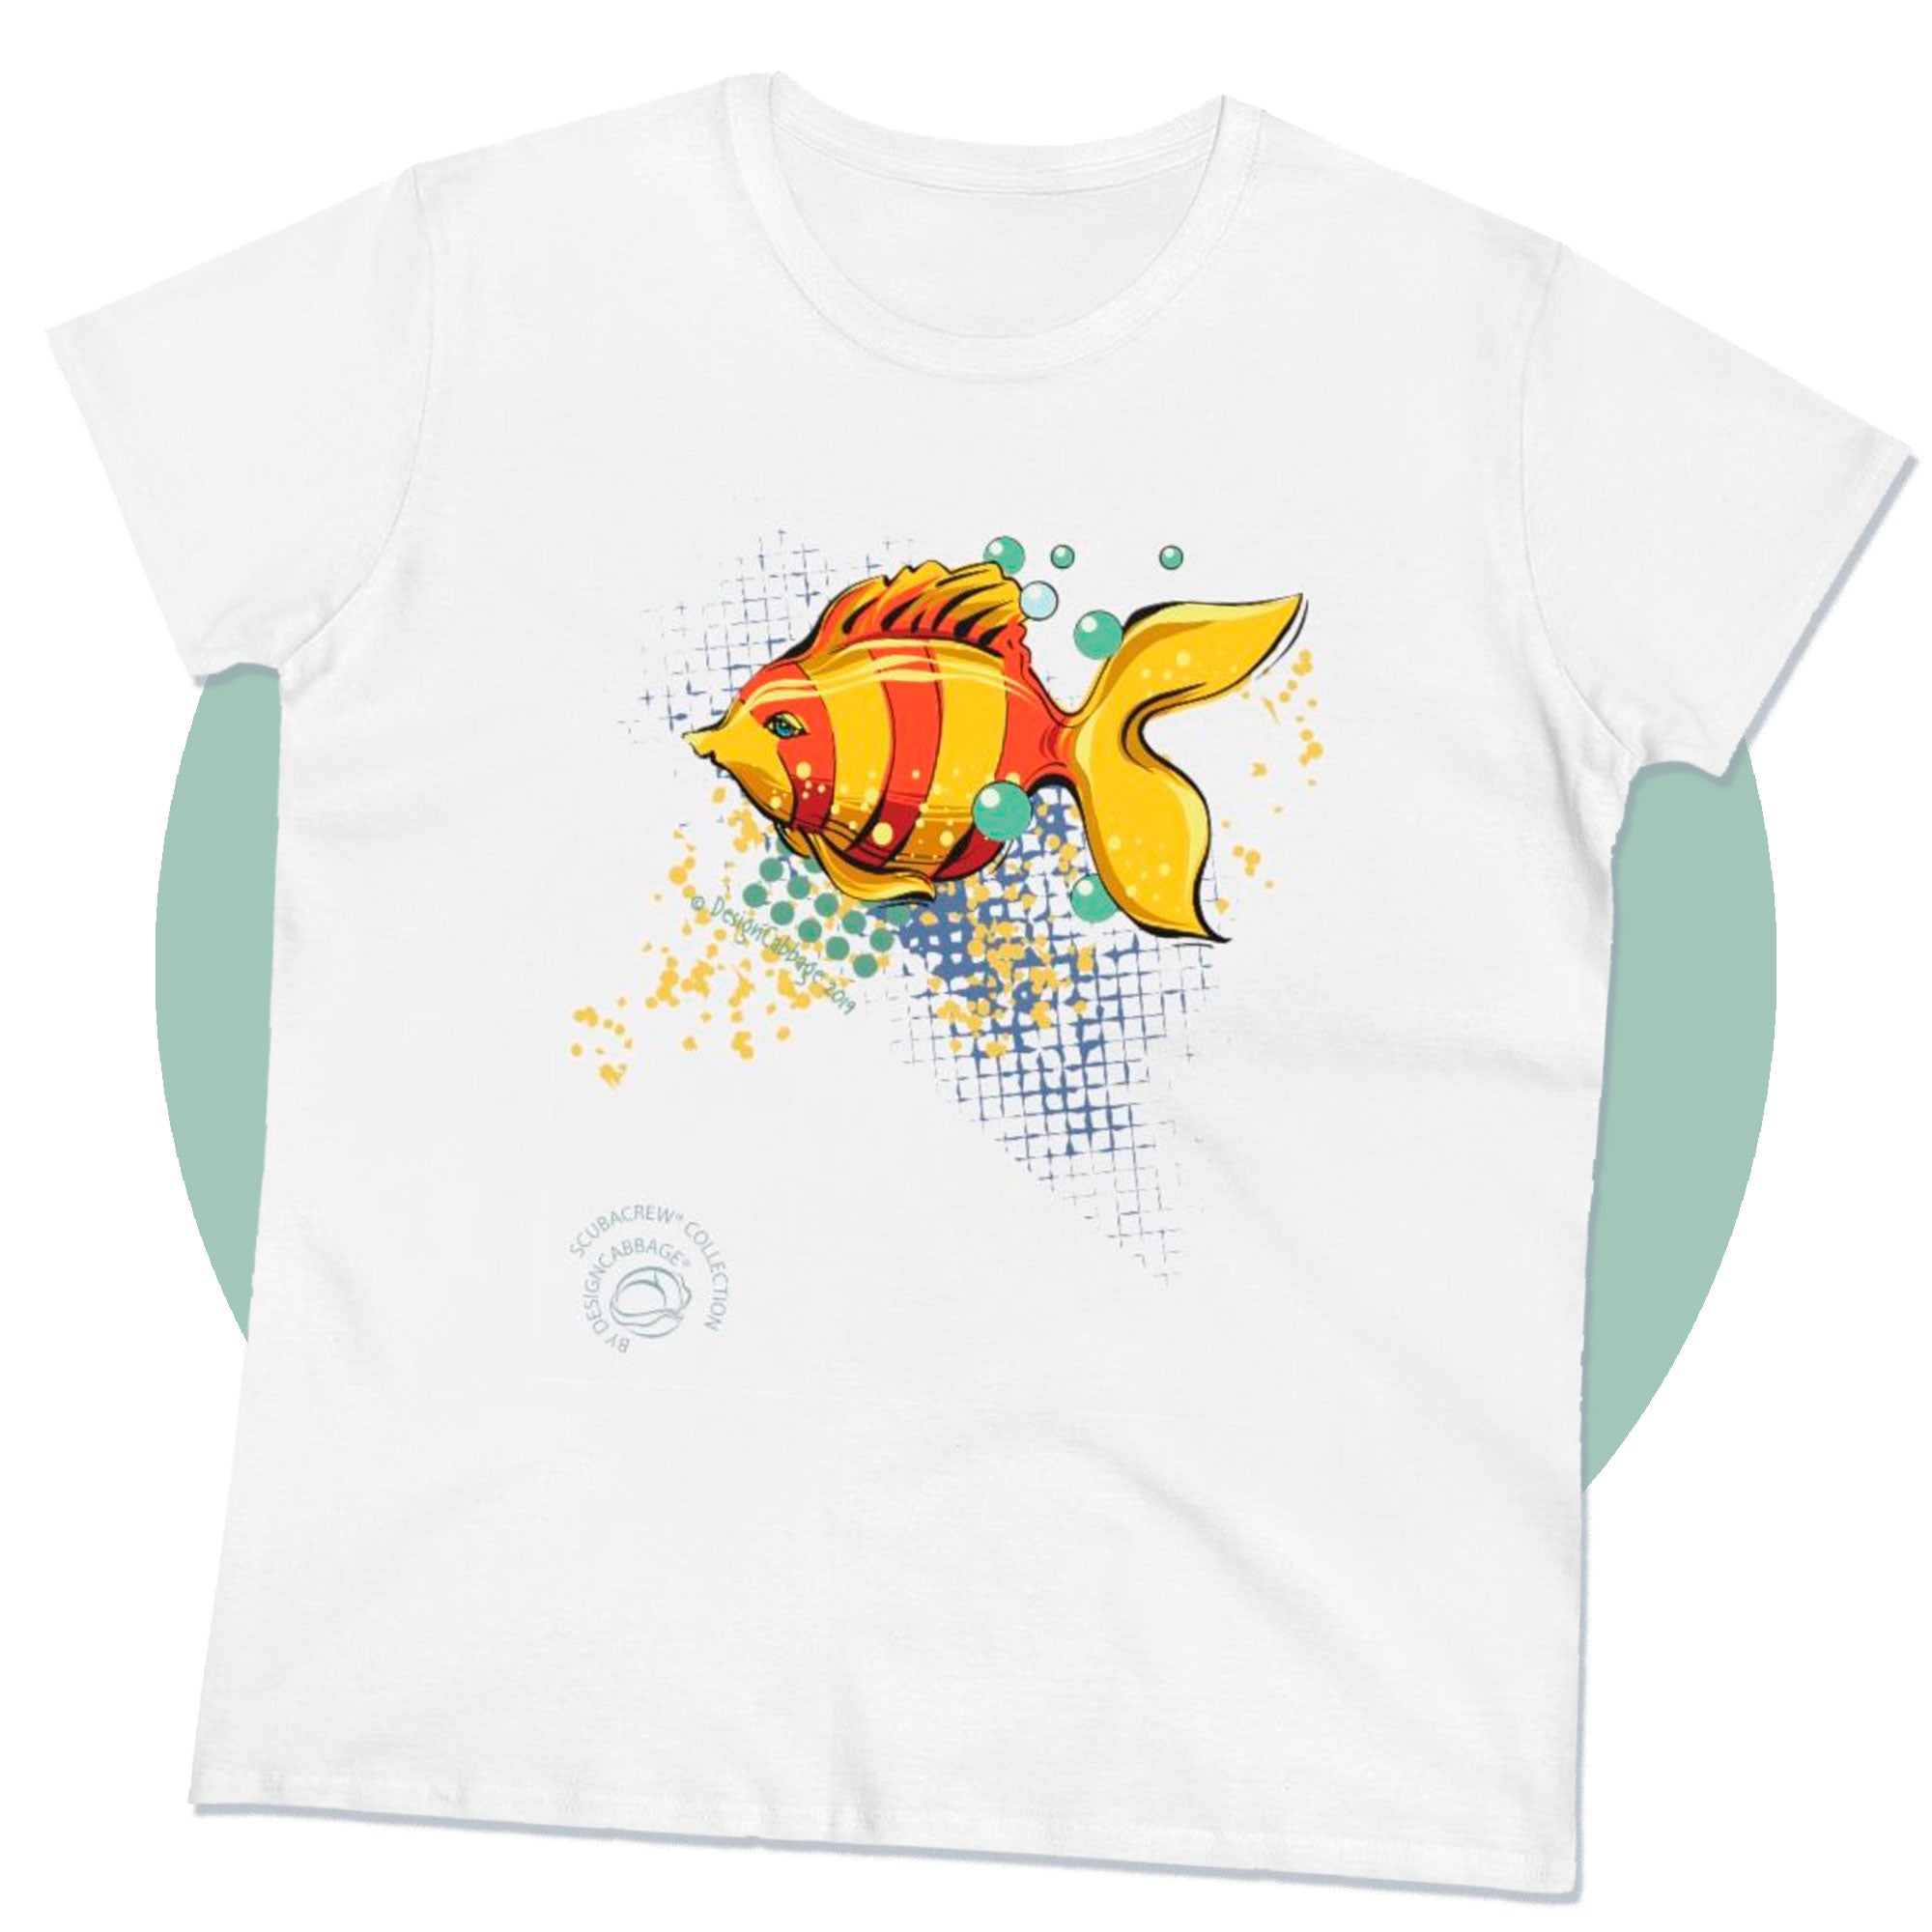 Kids Fishing Tee, Manitoba Fish T-Shirt, Graphic Tee, Screenprint, Blue T-Shirt, Grey T-Shirt, Fish Design